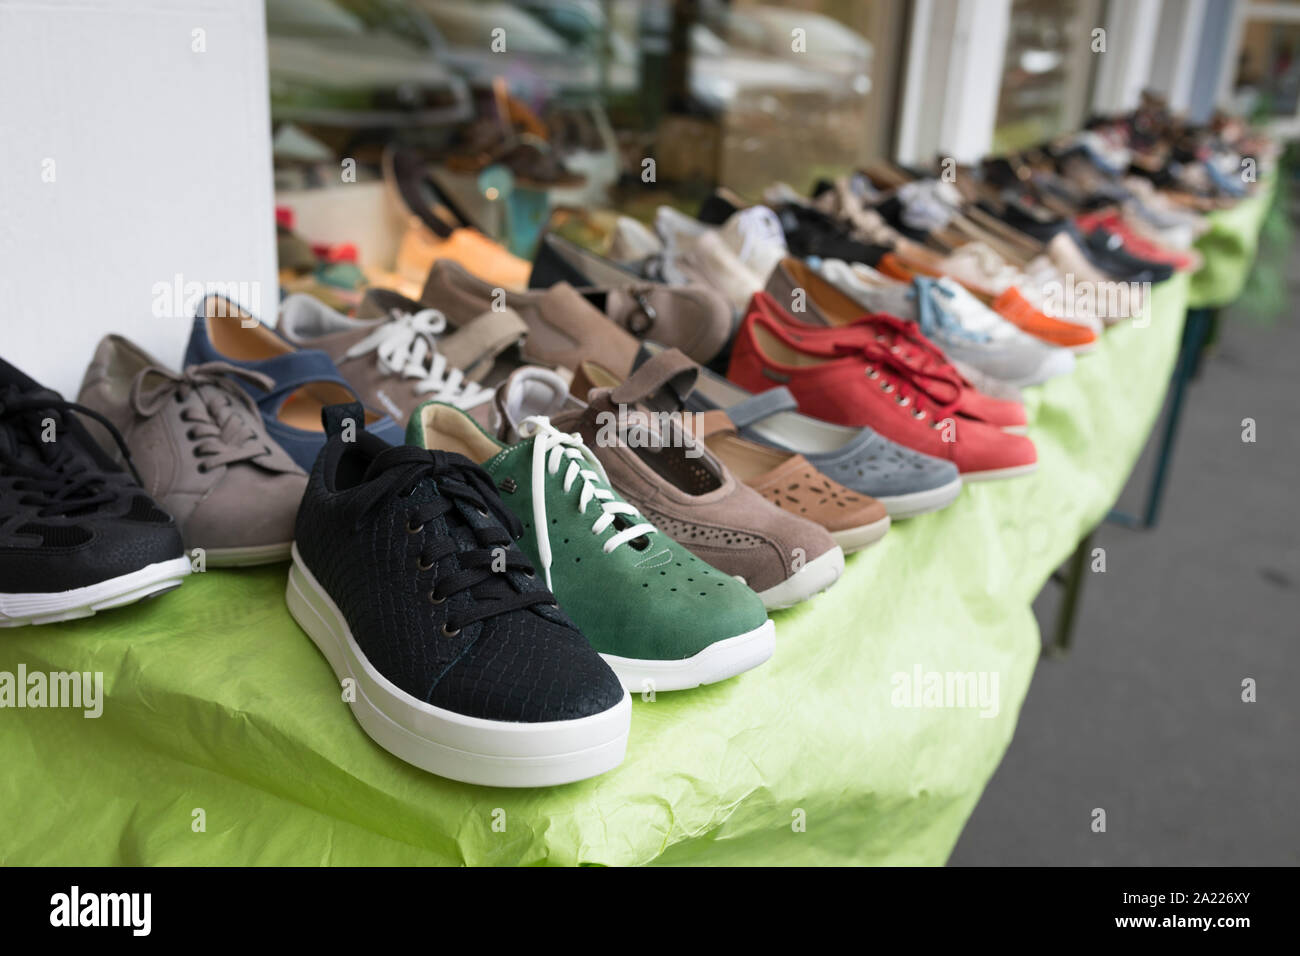 Los zapatos para la venta en una tienda en Alemania Fotografía de stock -  Alamy